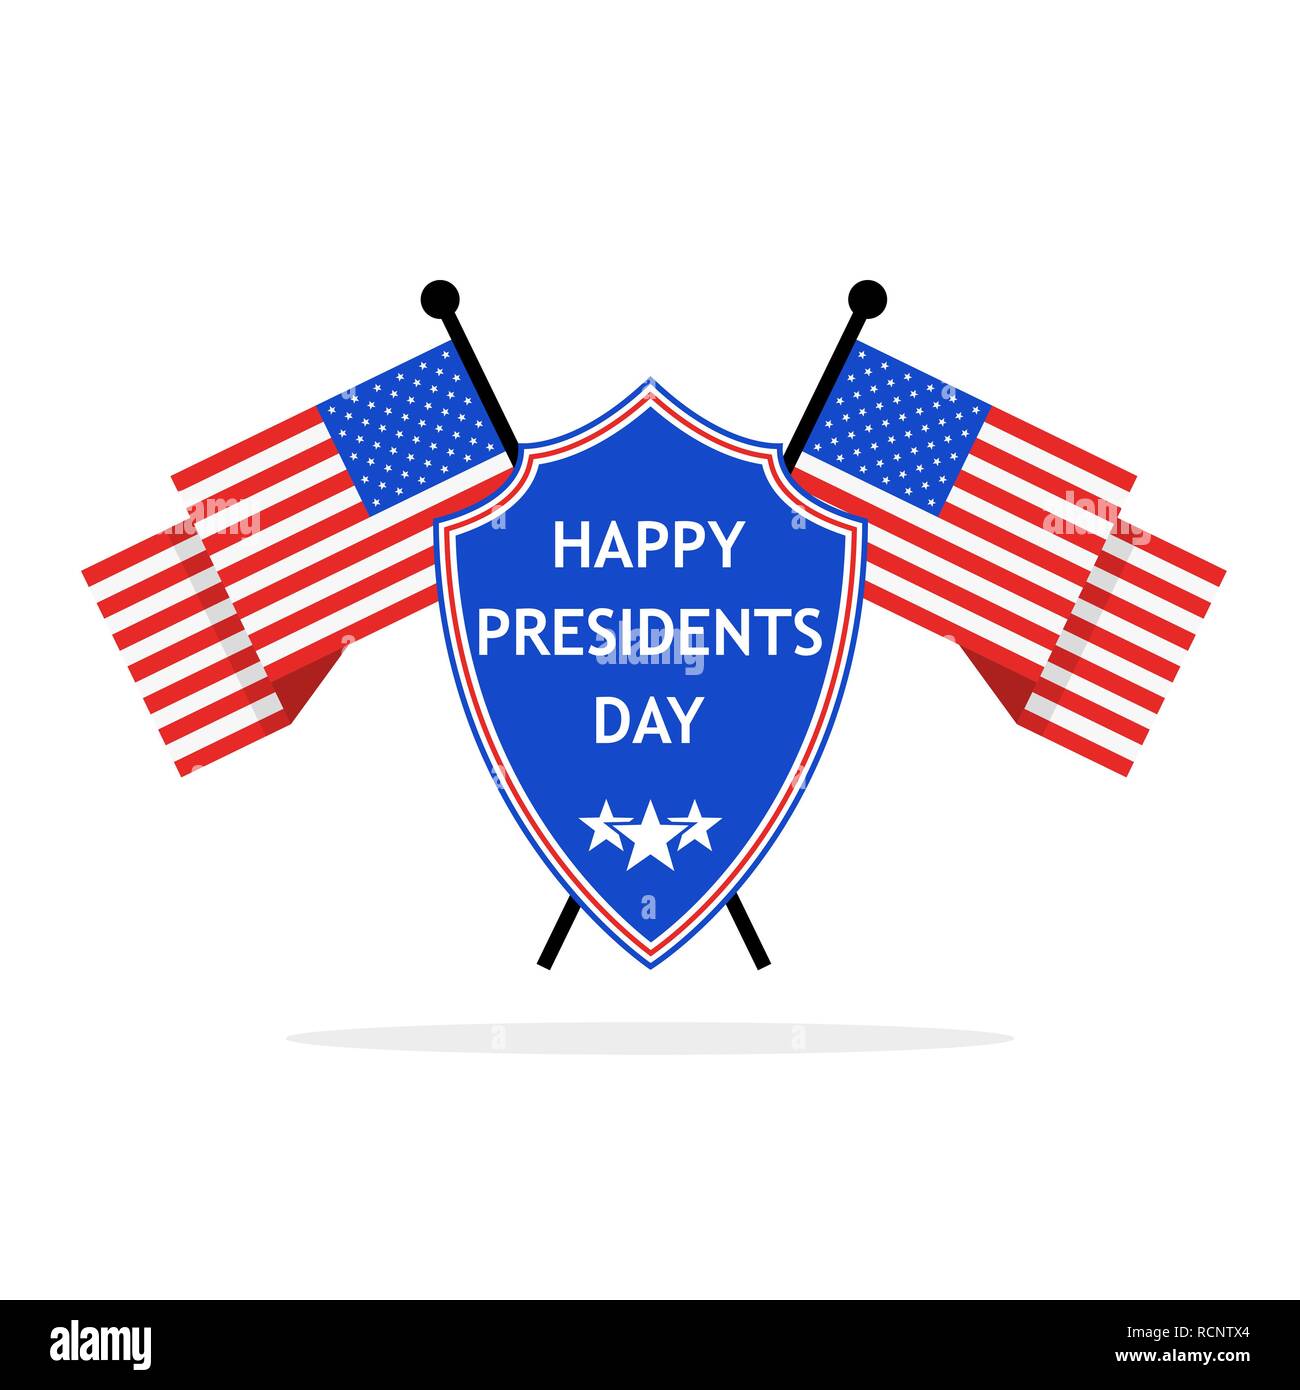 Logo de la Journée des présidents dans télévision design. Vector illustration. Résumé Journée Présidents logo avec bouclier et drapeaux Illustration de Vecteur